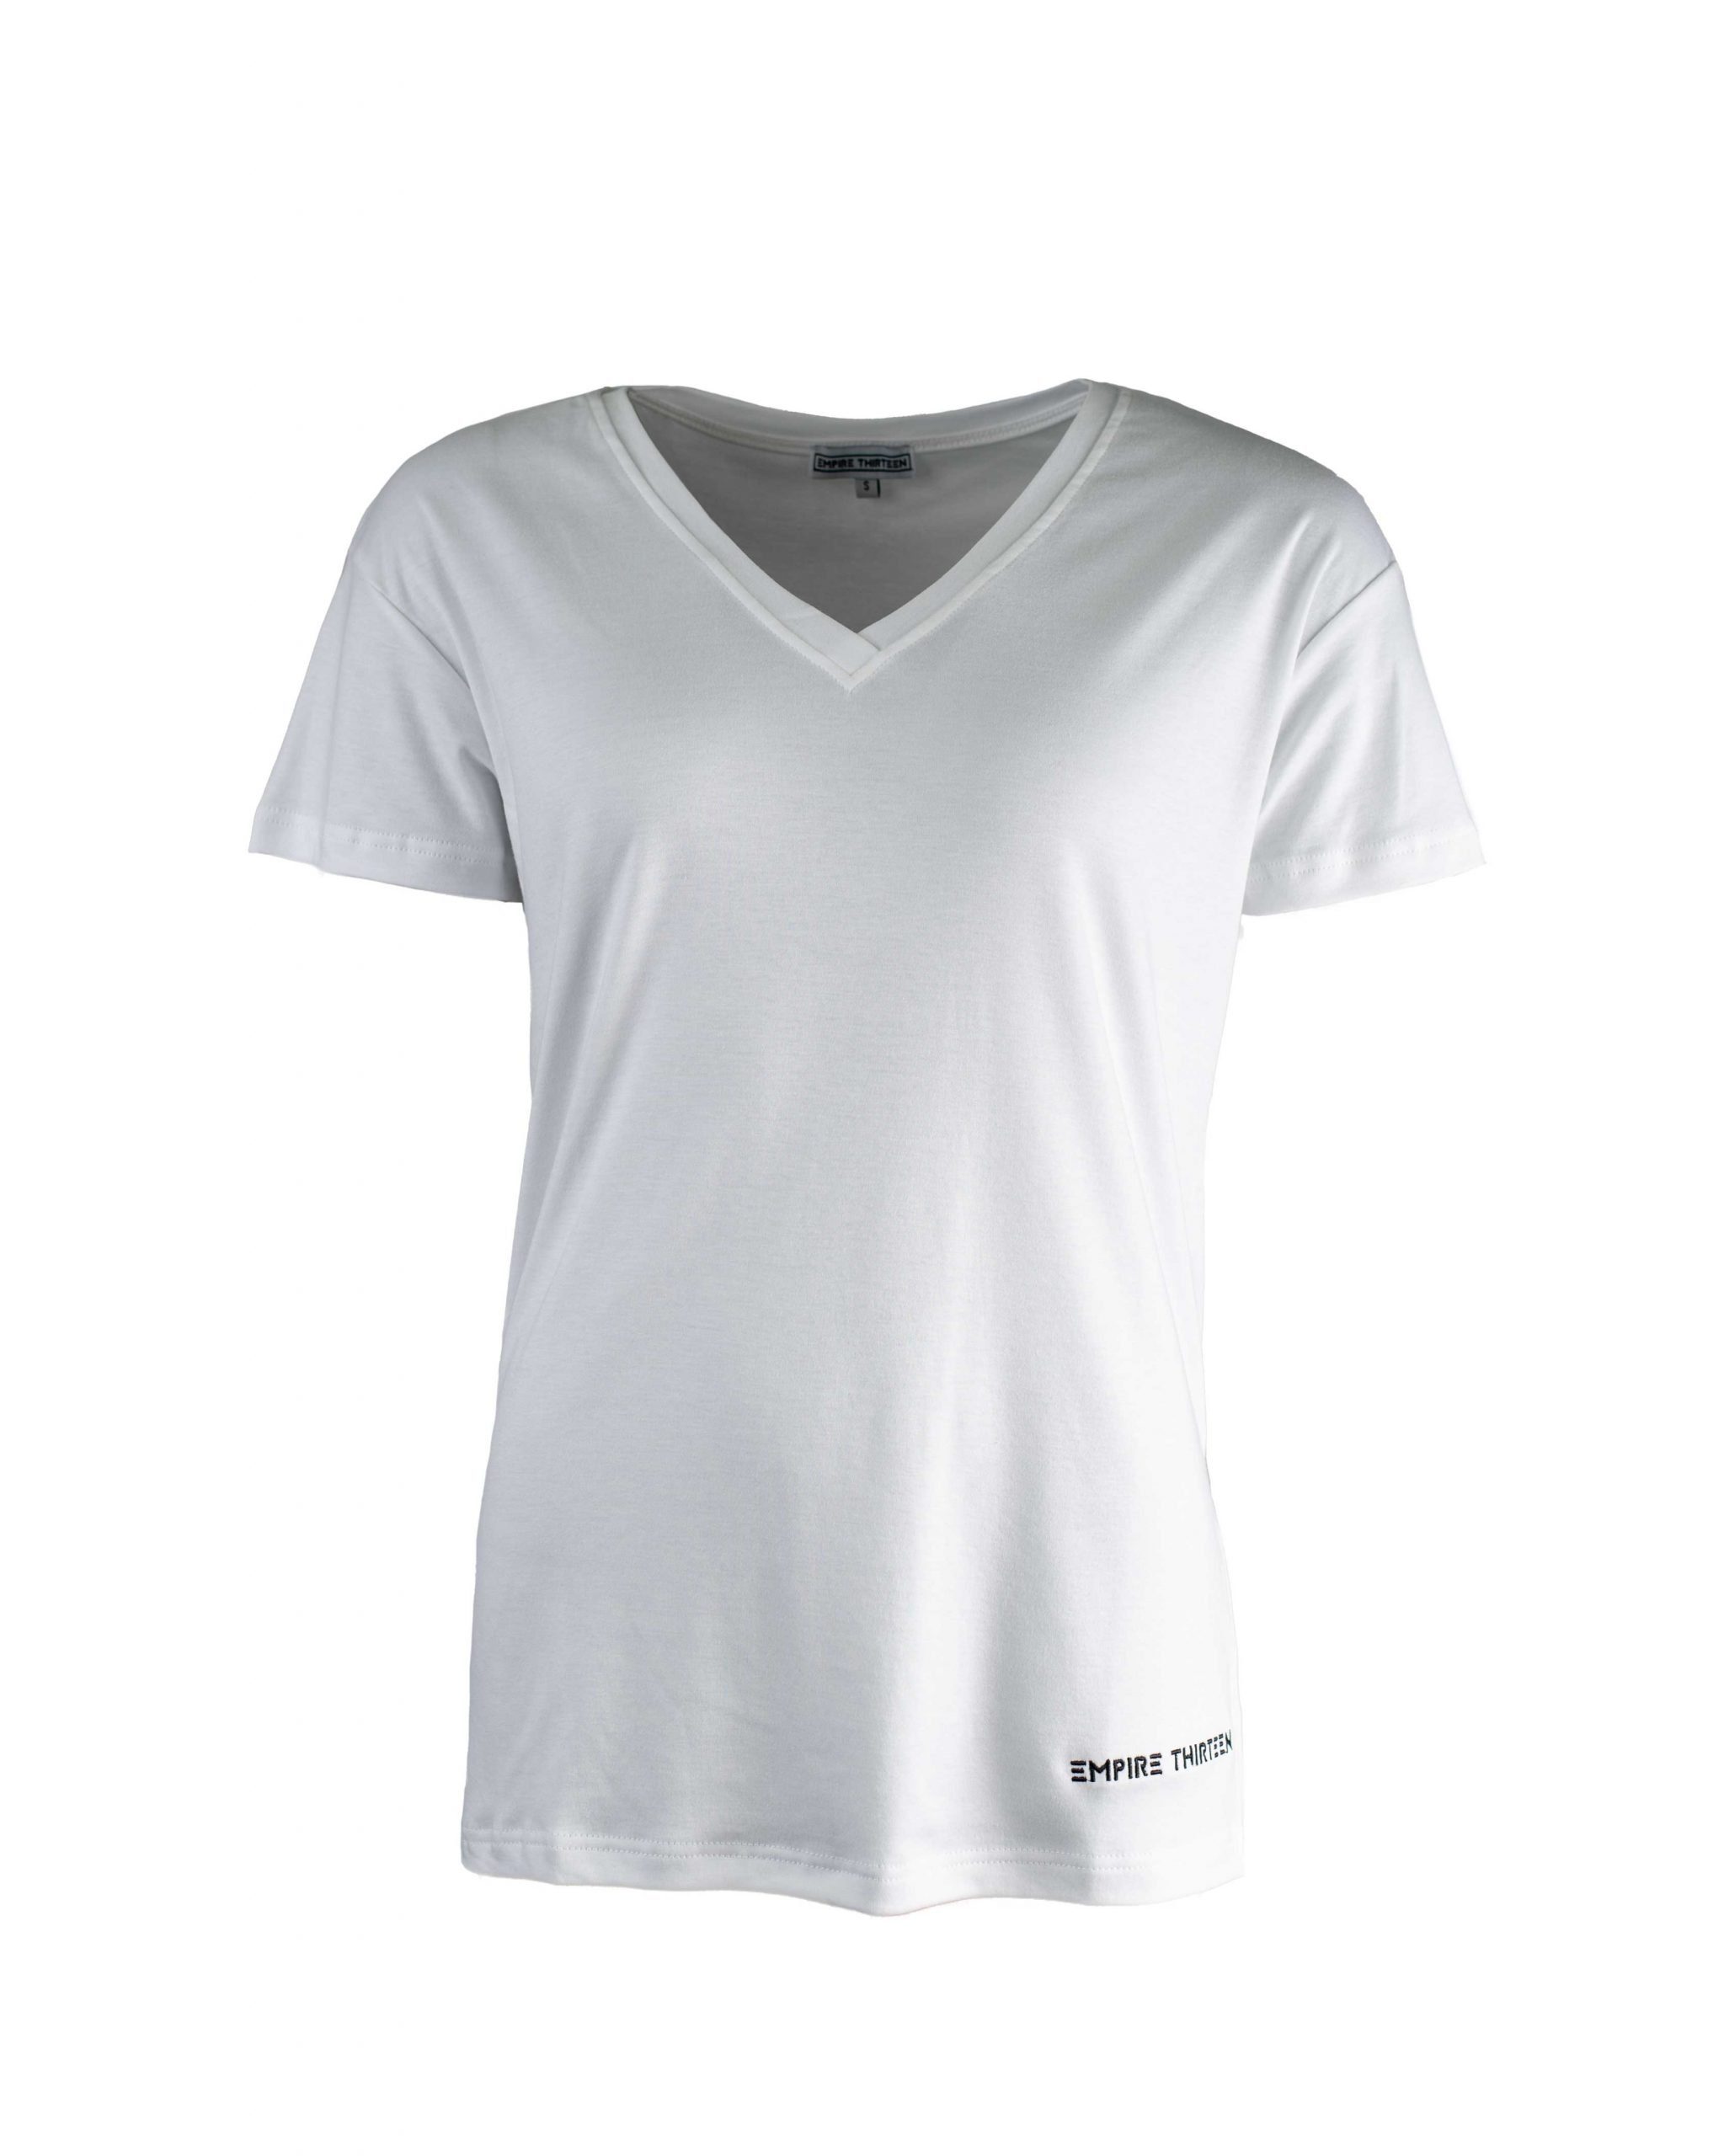 EMPIRE-THIRTEEN T-Shirt "EMPIRE-THIRTEEN" V-NECK SHIRT LADIES Logostickerei, V-Ausschnitt Weiß